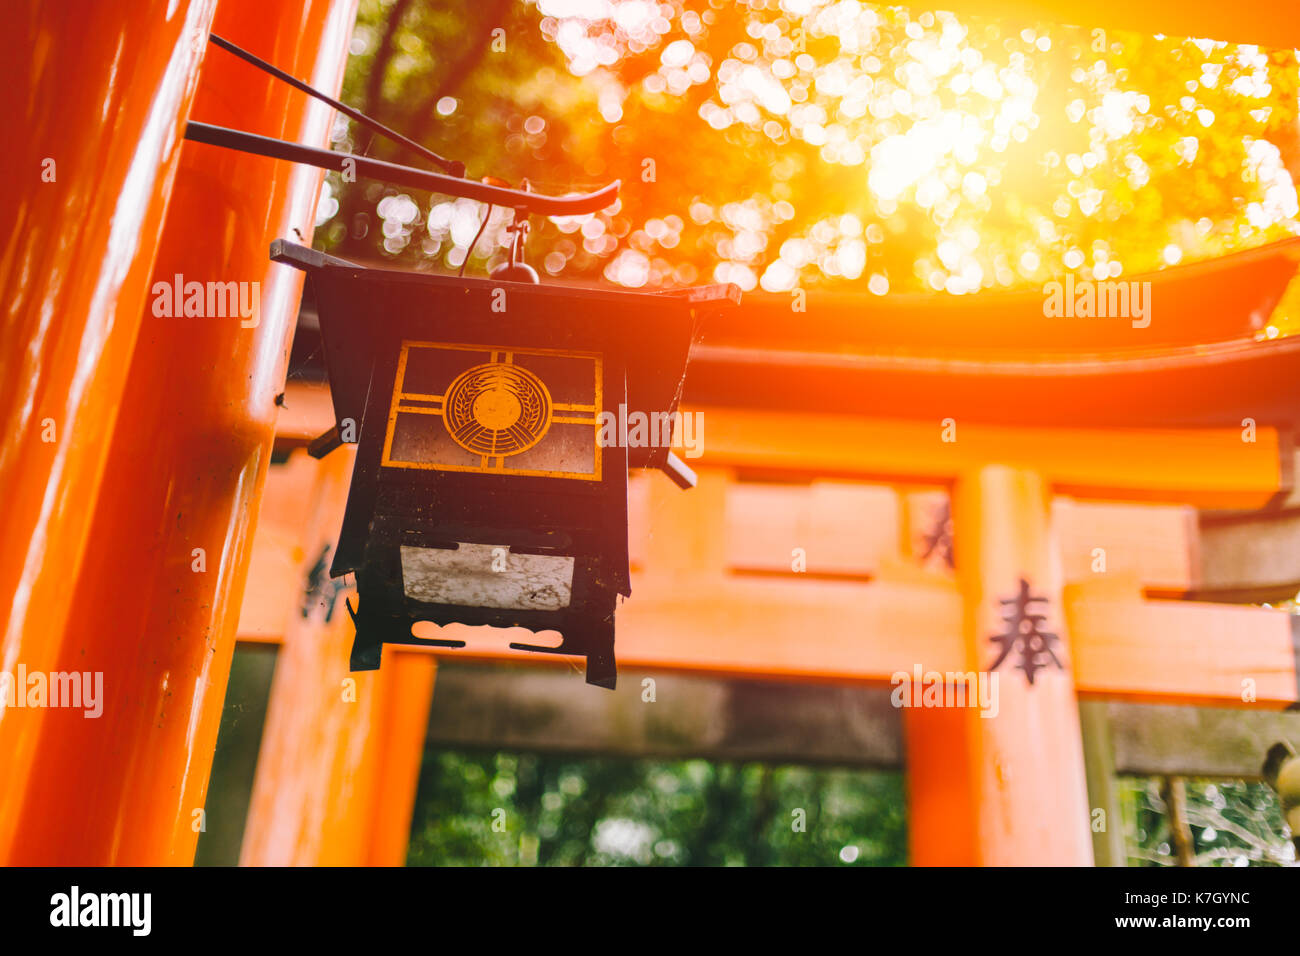 Schöne Sonne Licht am Fushimi Inari Schrein (Fushimi Inari Taisha) red-Japan schrein Tempel im Herbst Herbst Jahreszeit. Stockfoto